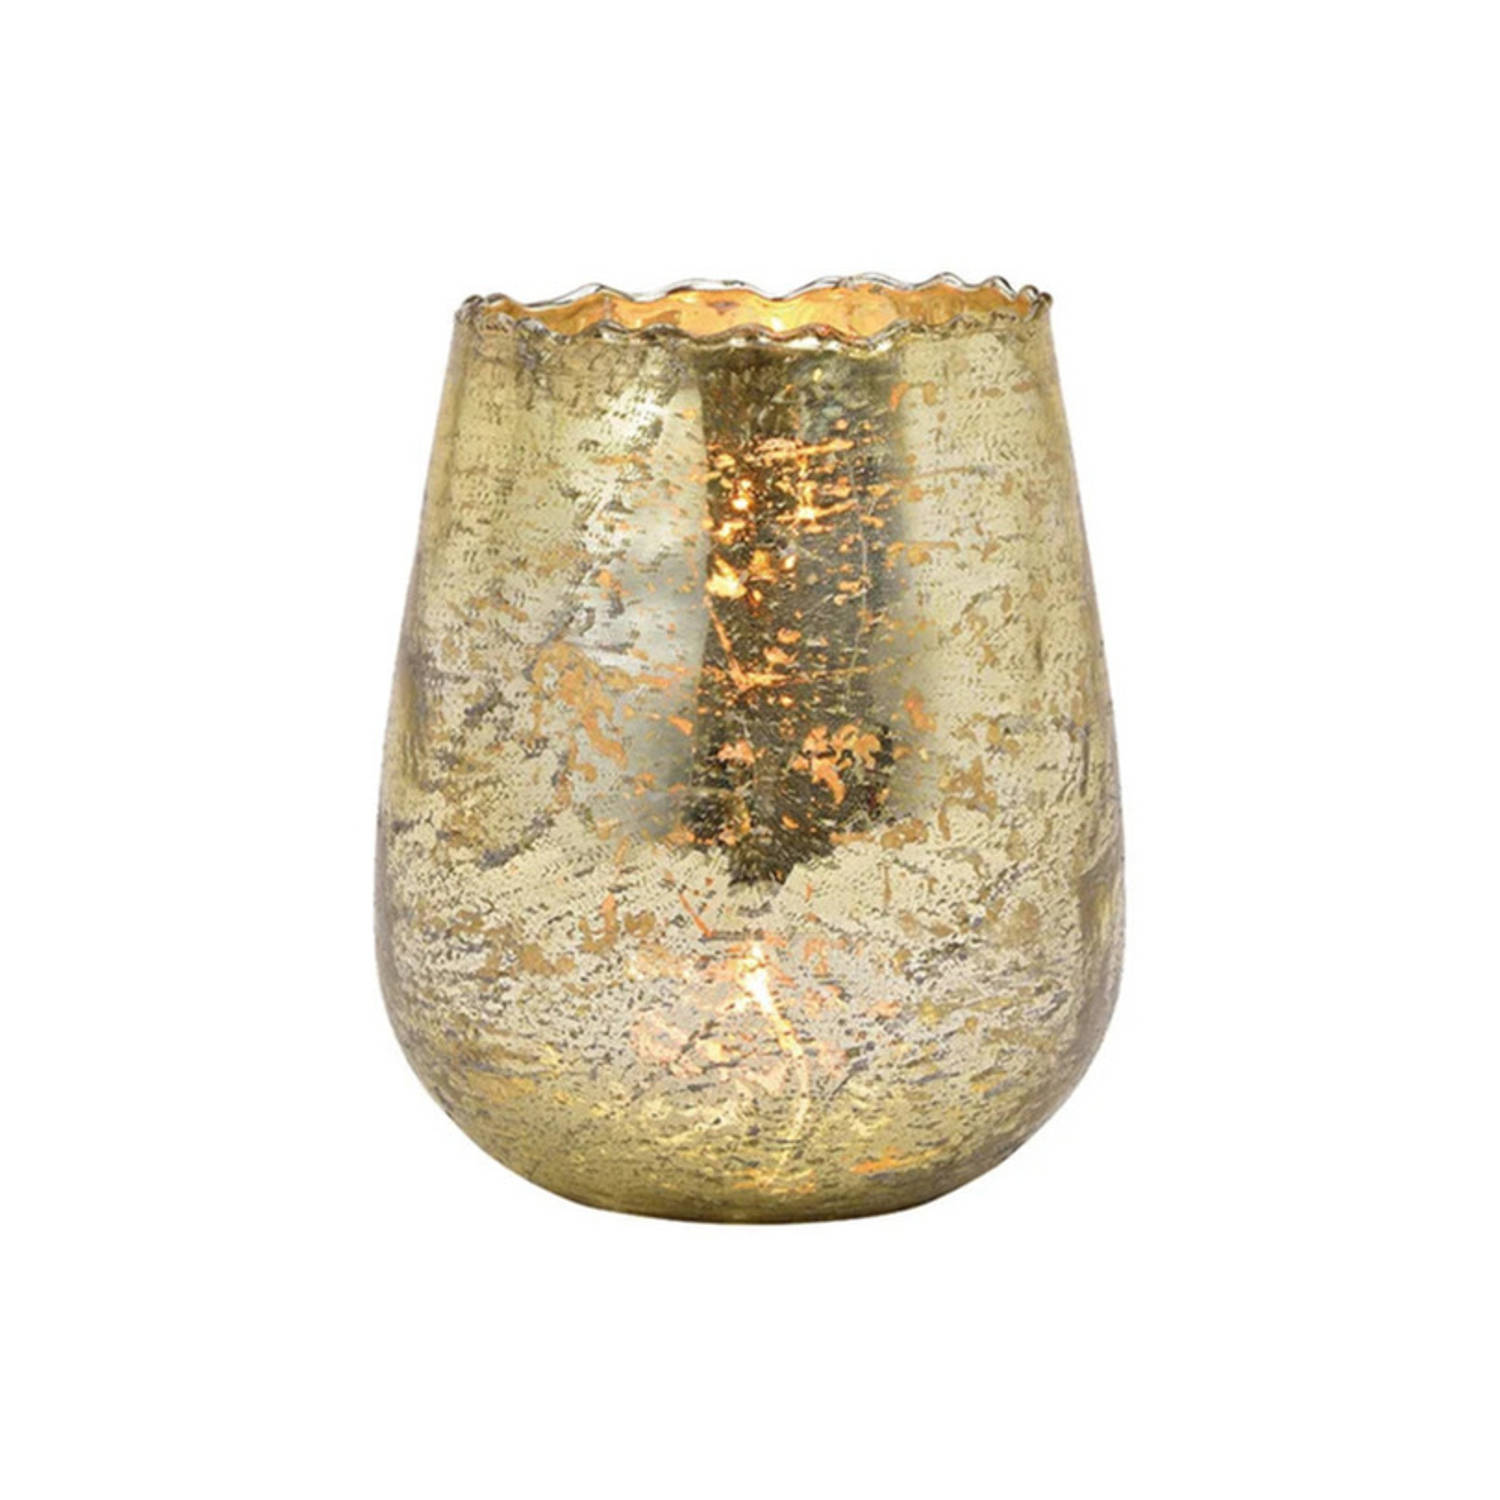 Glazen Design Windlicht-kaarsenhouder In De Kleur Champagne Goud Met Formaat 12 X 15 X 12 Cm. Voor W